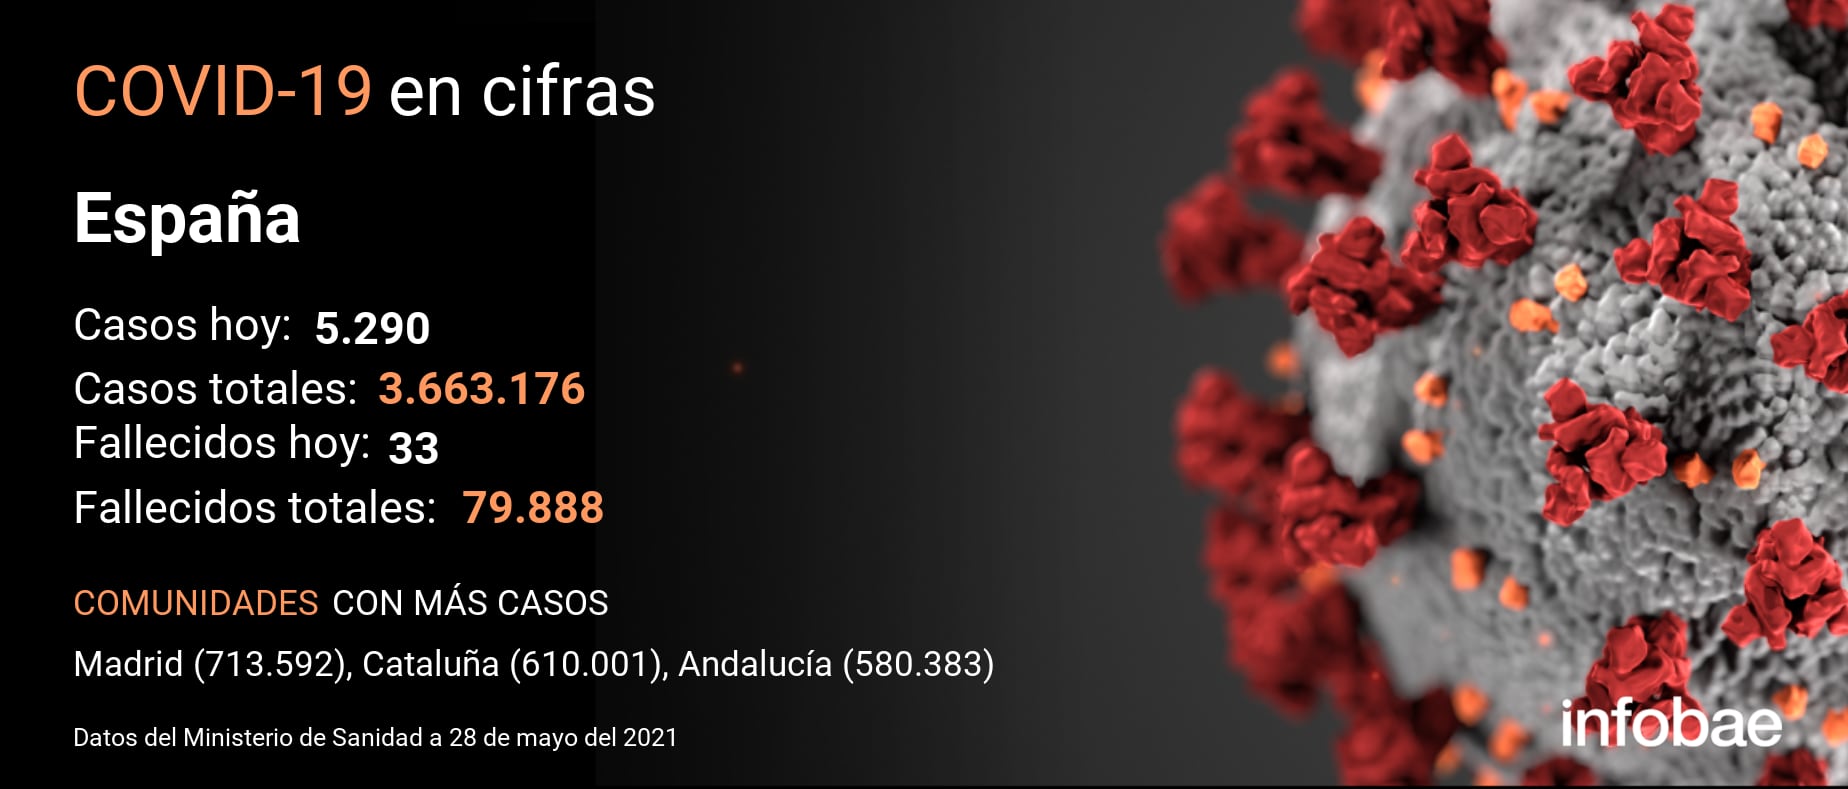 El último reporte del coronavirus refleja 33 nuevos fallecimientos en España, según indican los datos oficiales de la Johns Hopkins University del 27 de mayo